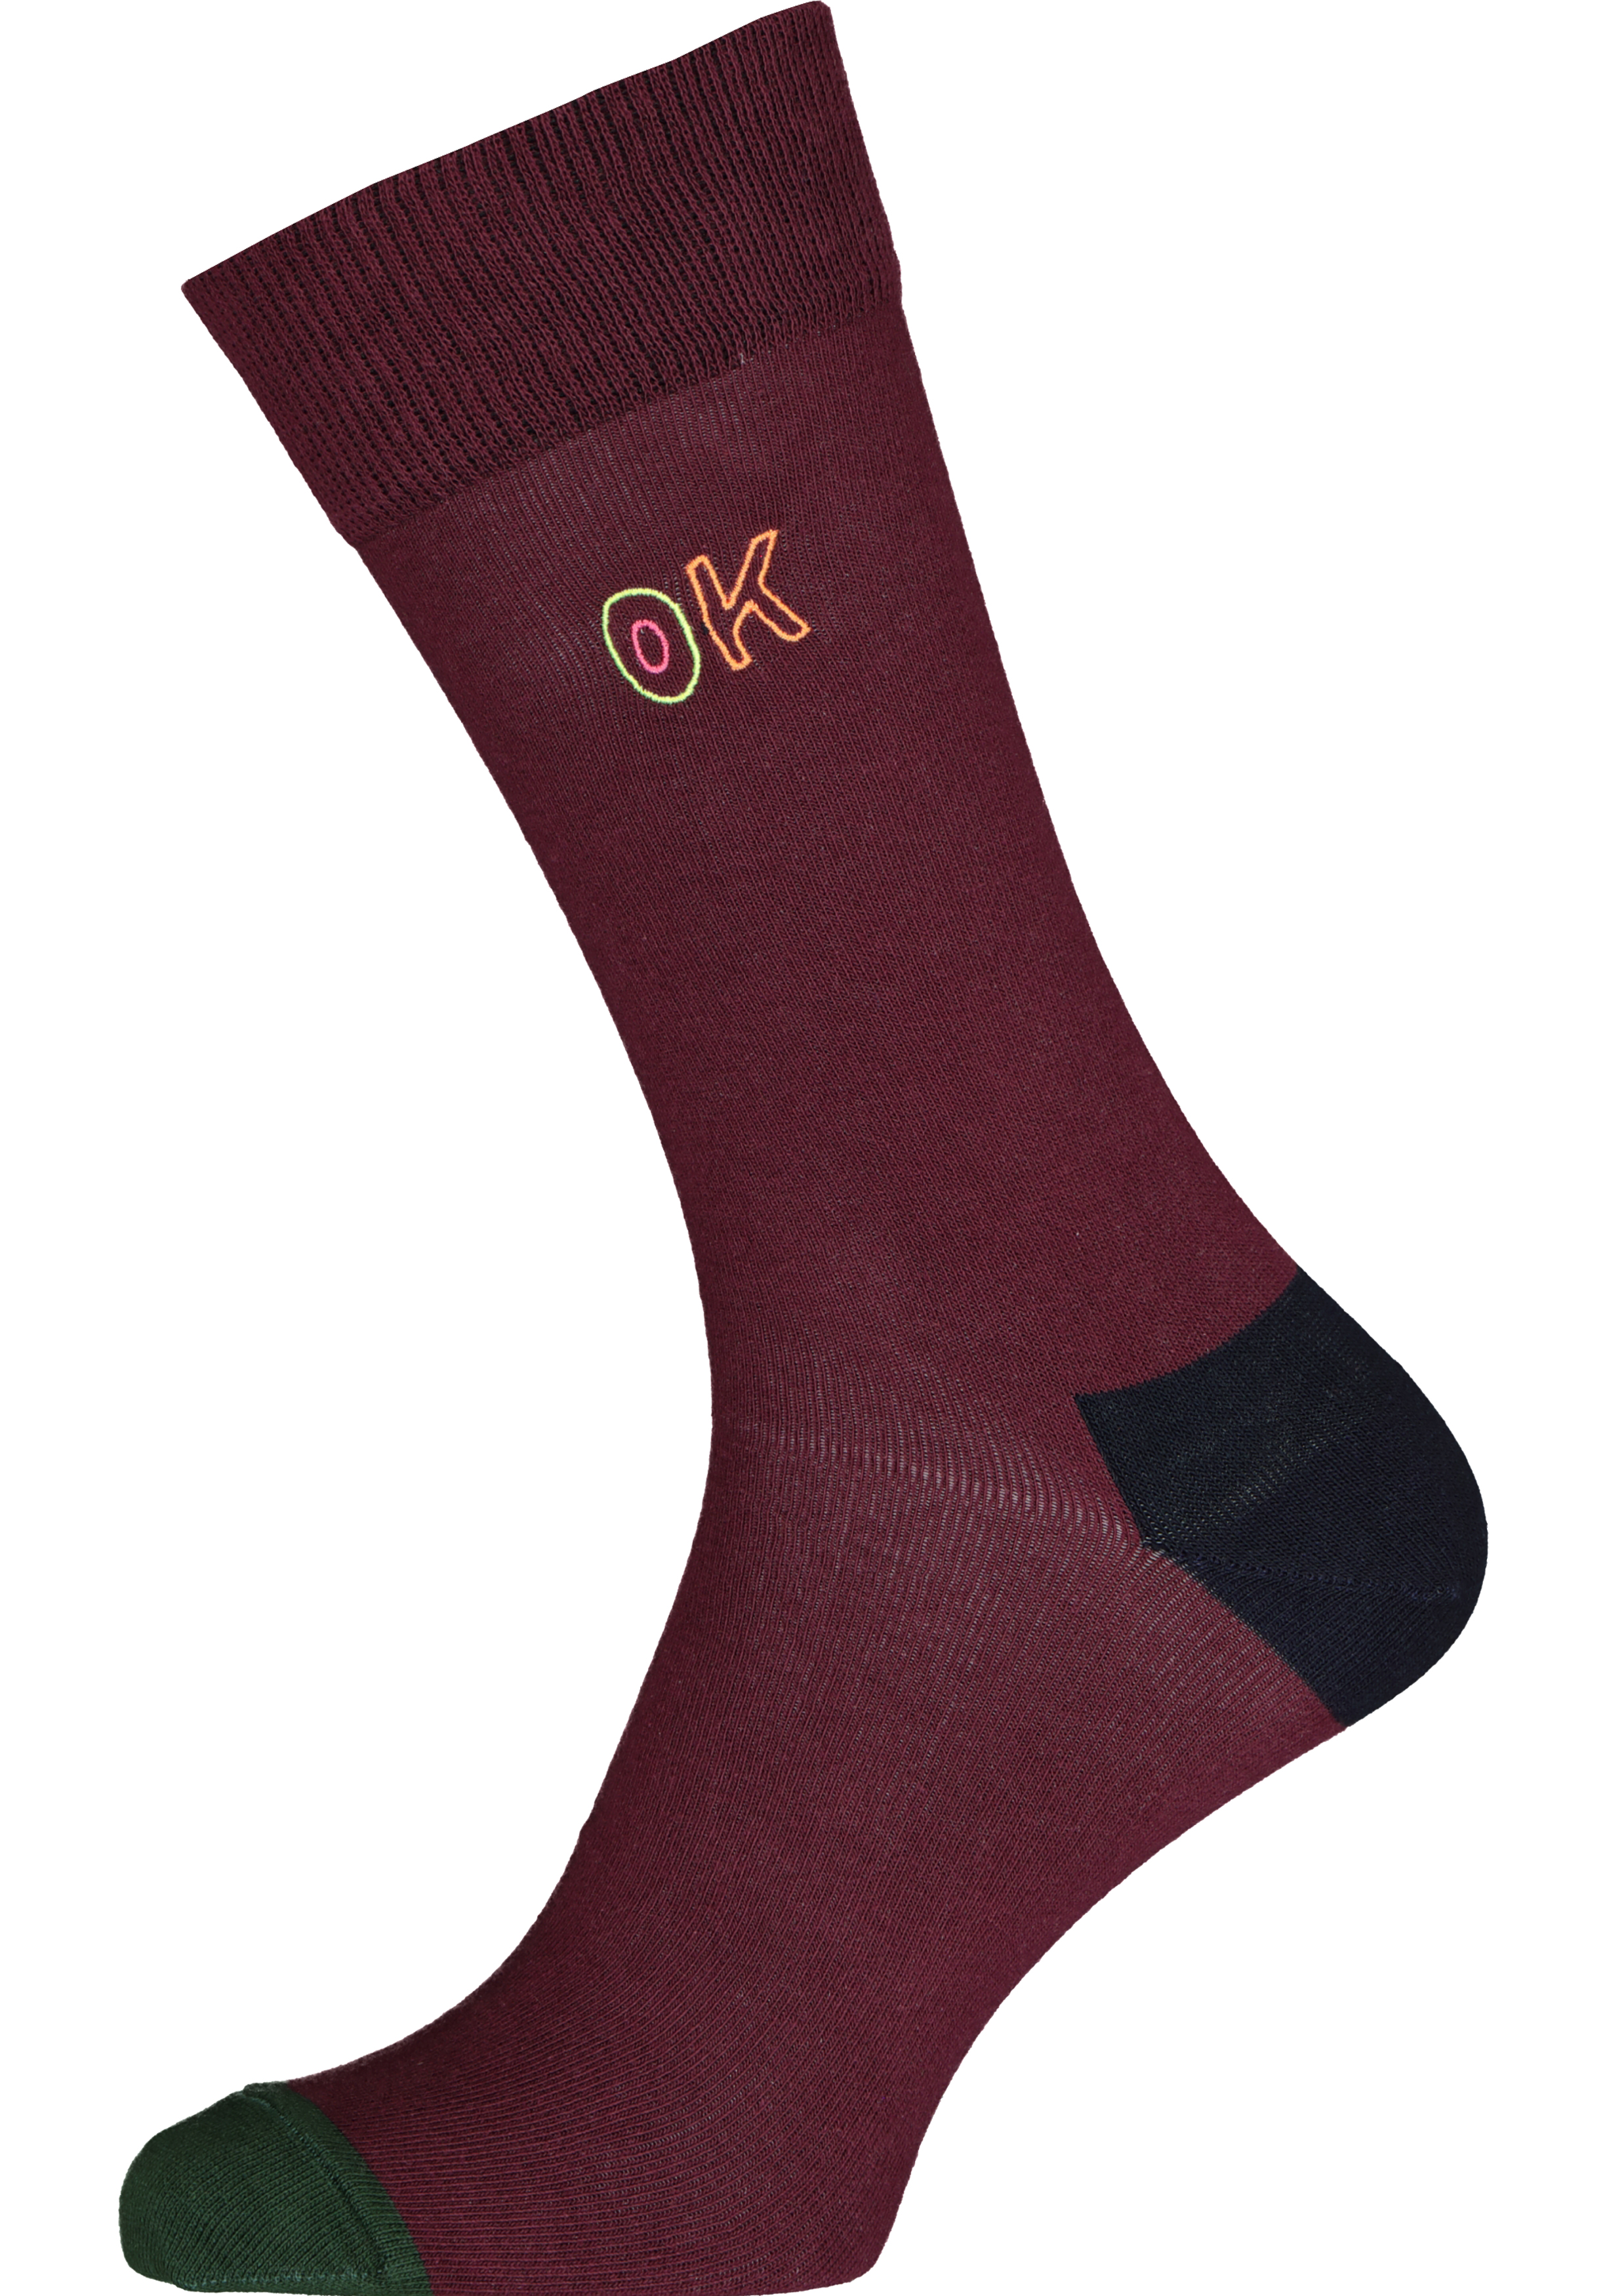 Happy Socks Embroidery Ok Sock, unisex sokken, bordeaux is OK